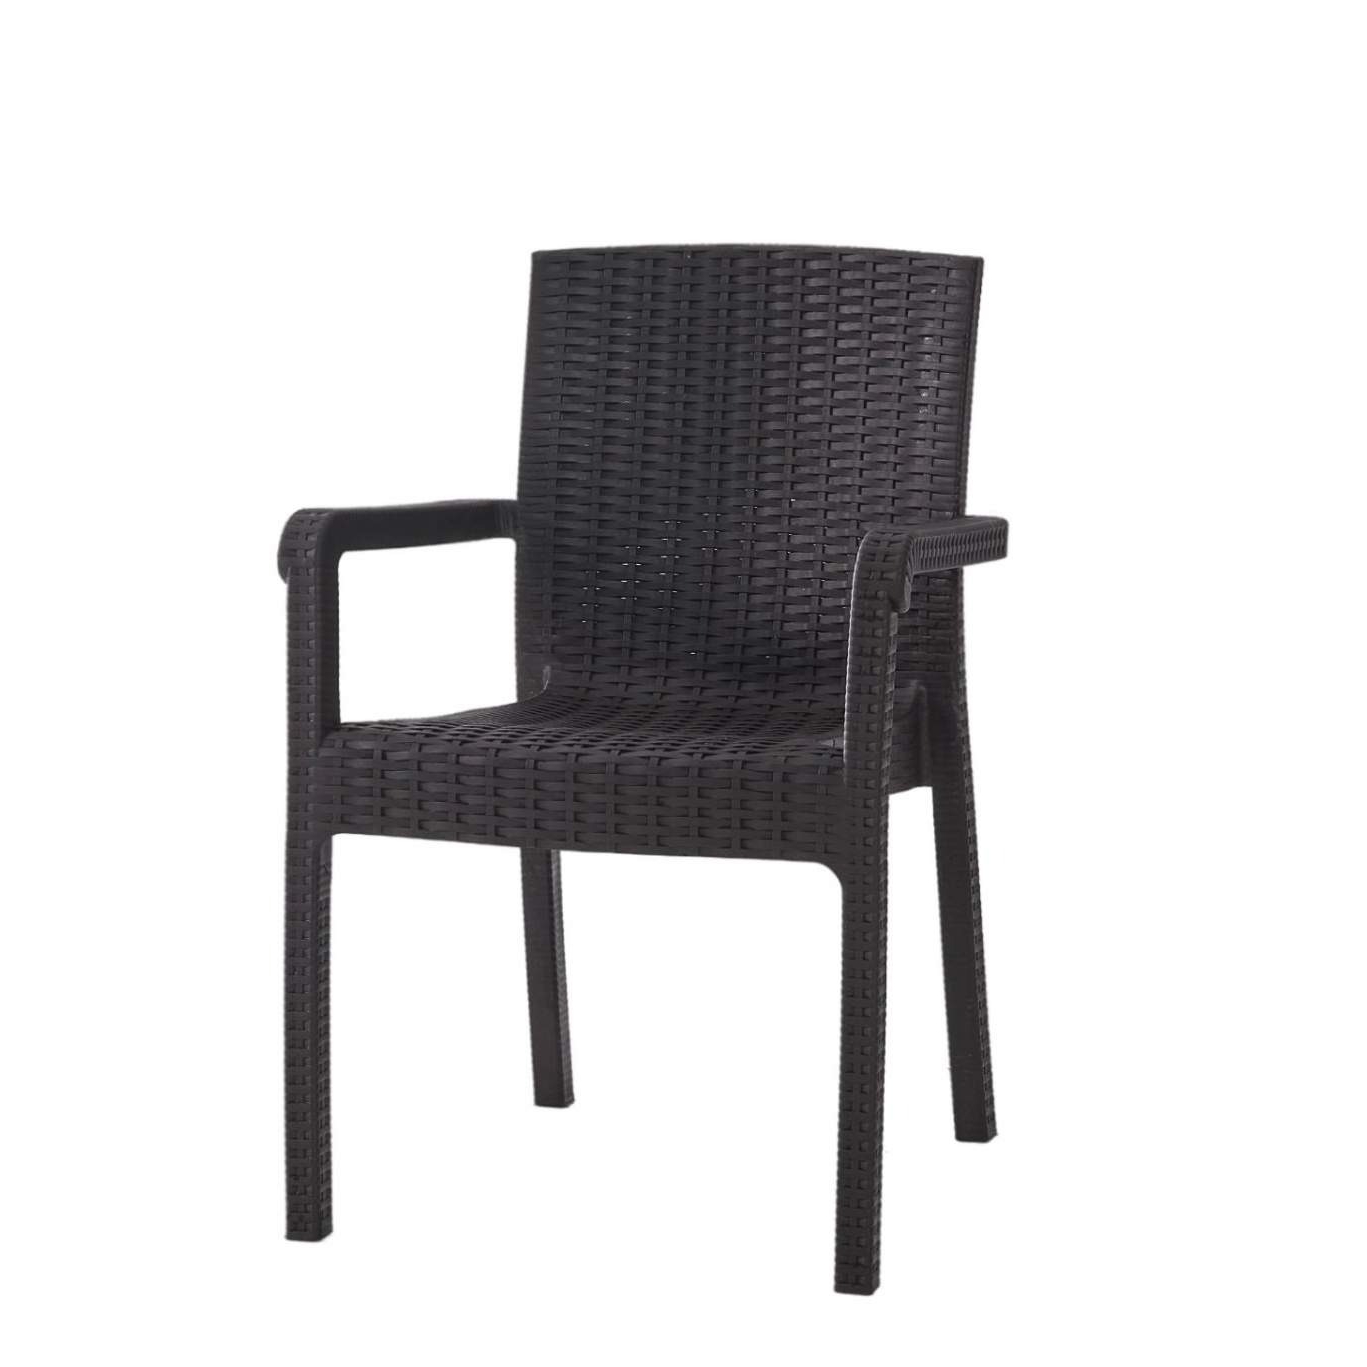 Кресло Heniver Vector темно-коричневое 58х45х85 см кресло heniver bambo темно коричневое 64х43 5x82 см